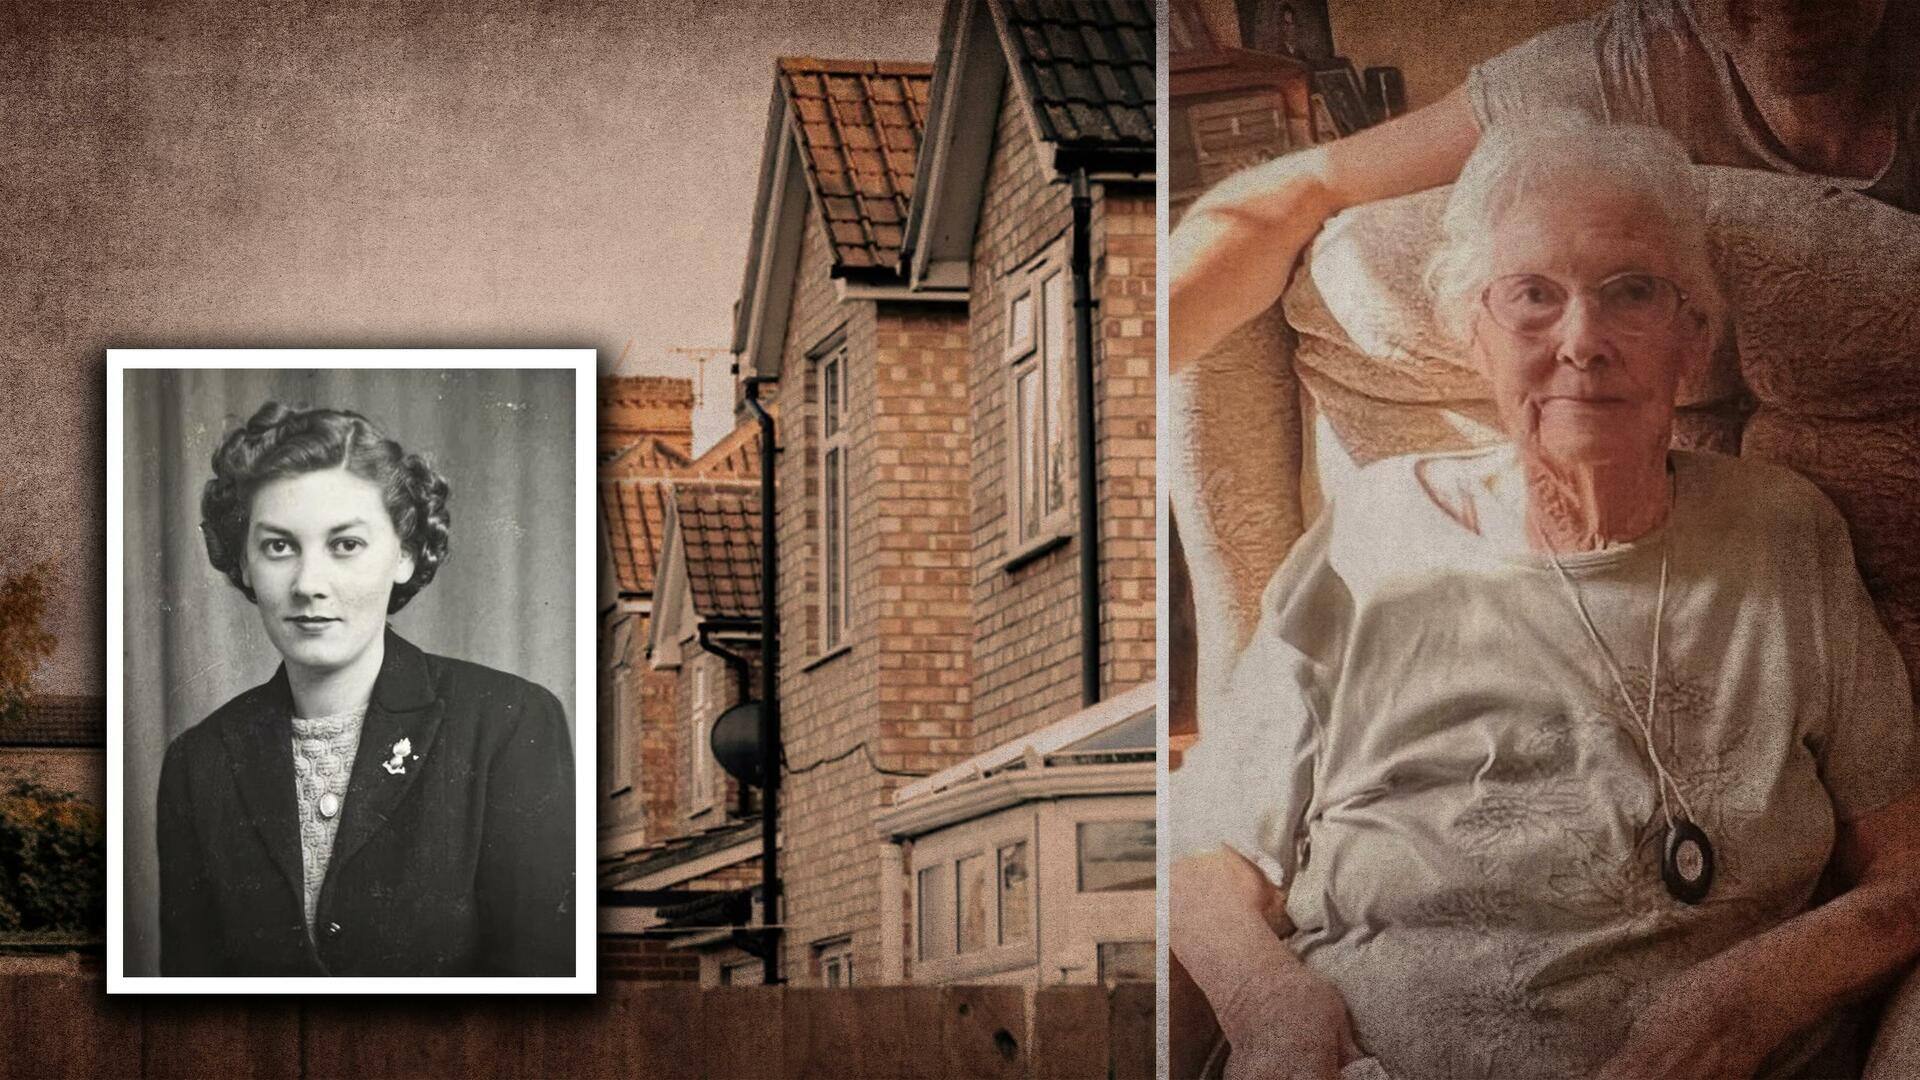 इंग्लैंड: 102 साल तक रहने के बाद यह बुजुर्ग महिला बेच रही अपना घर, जानिए कारण